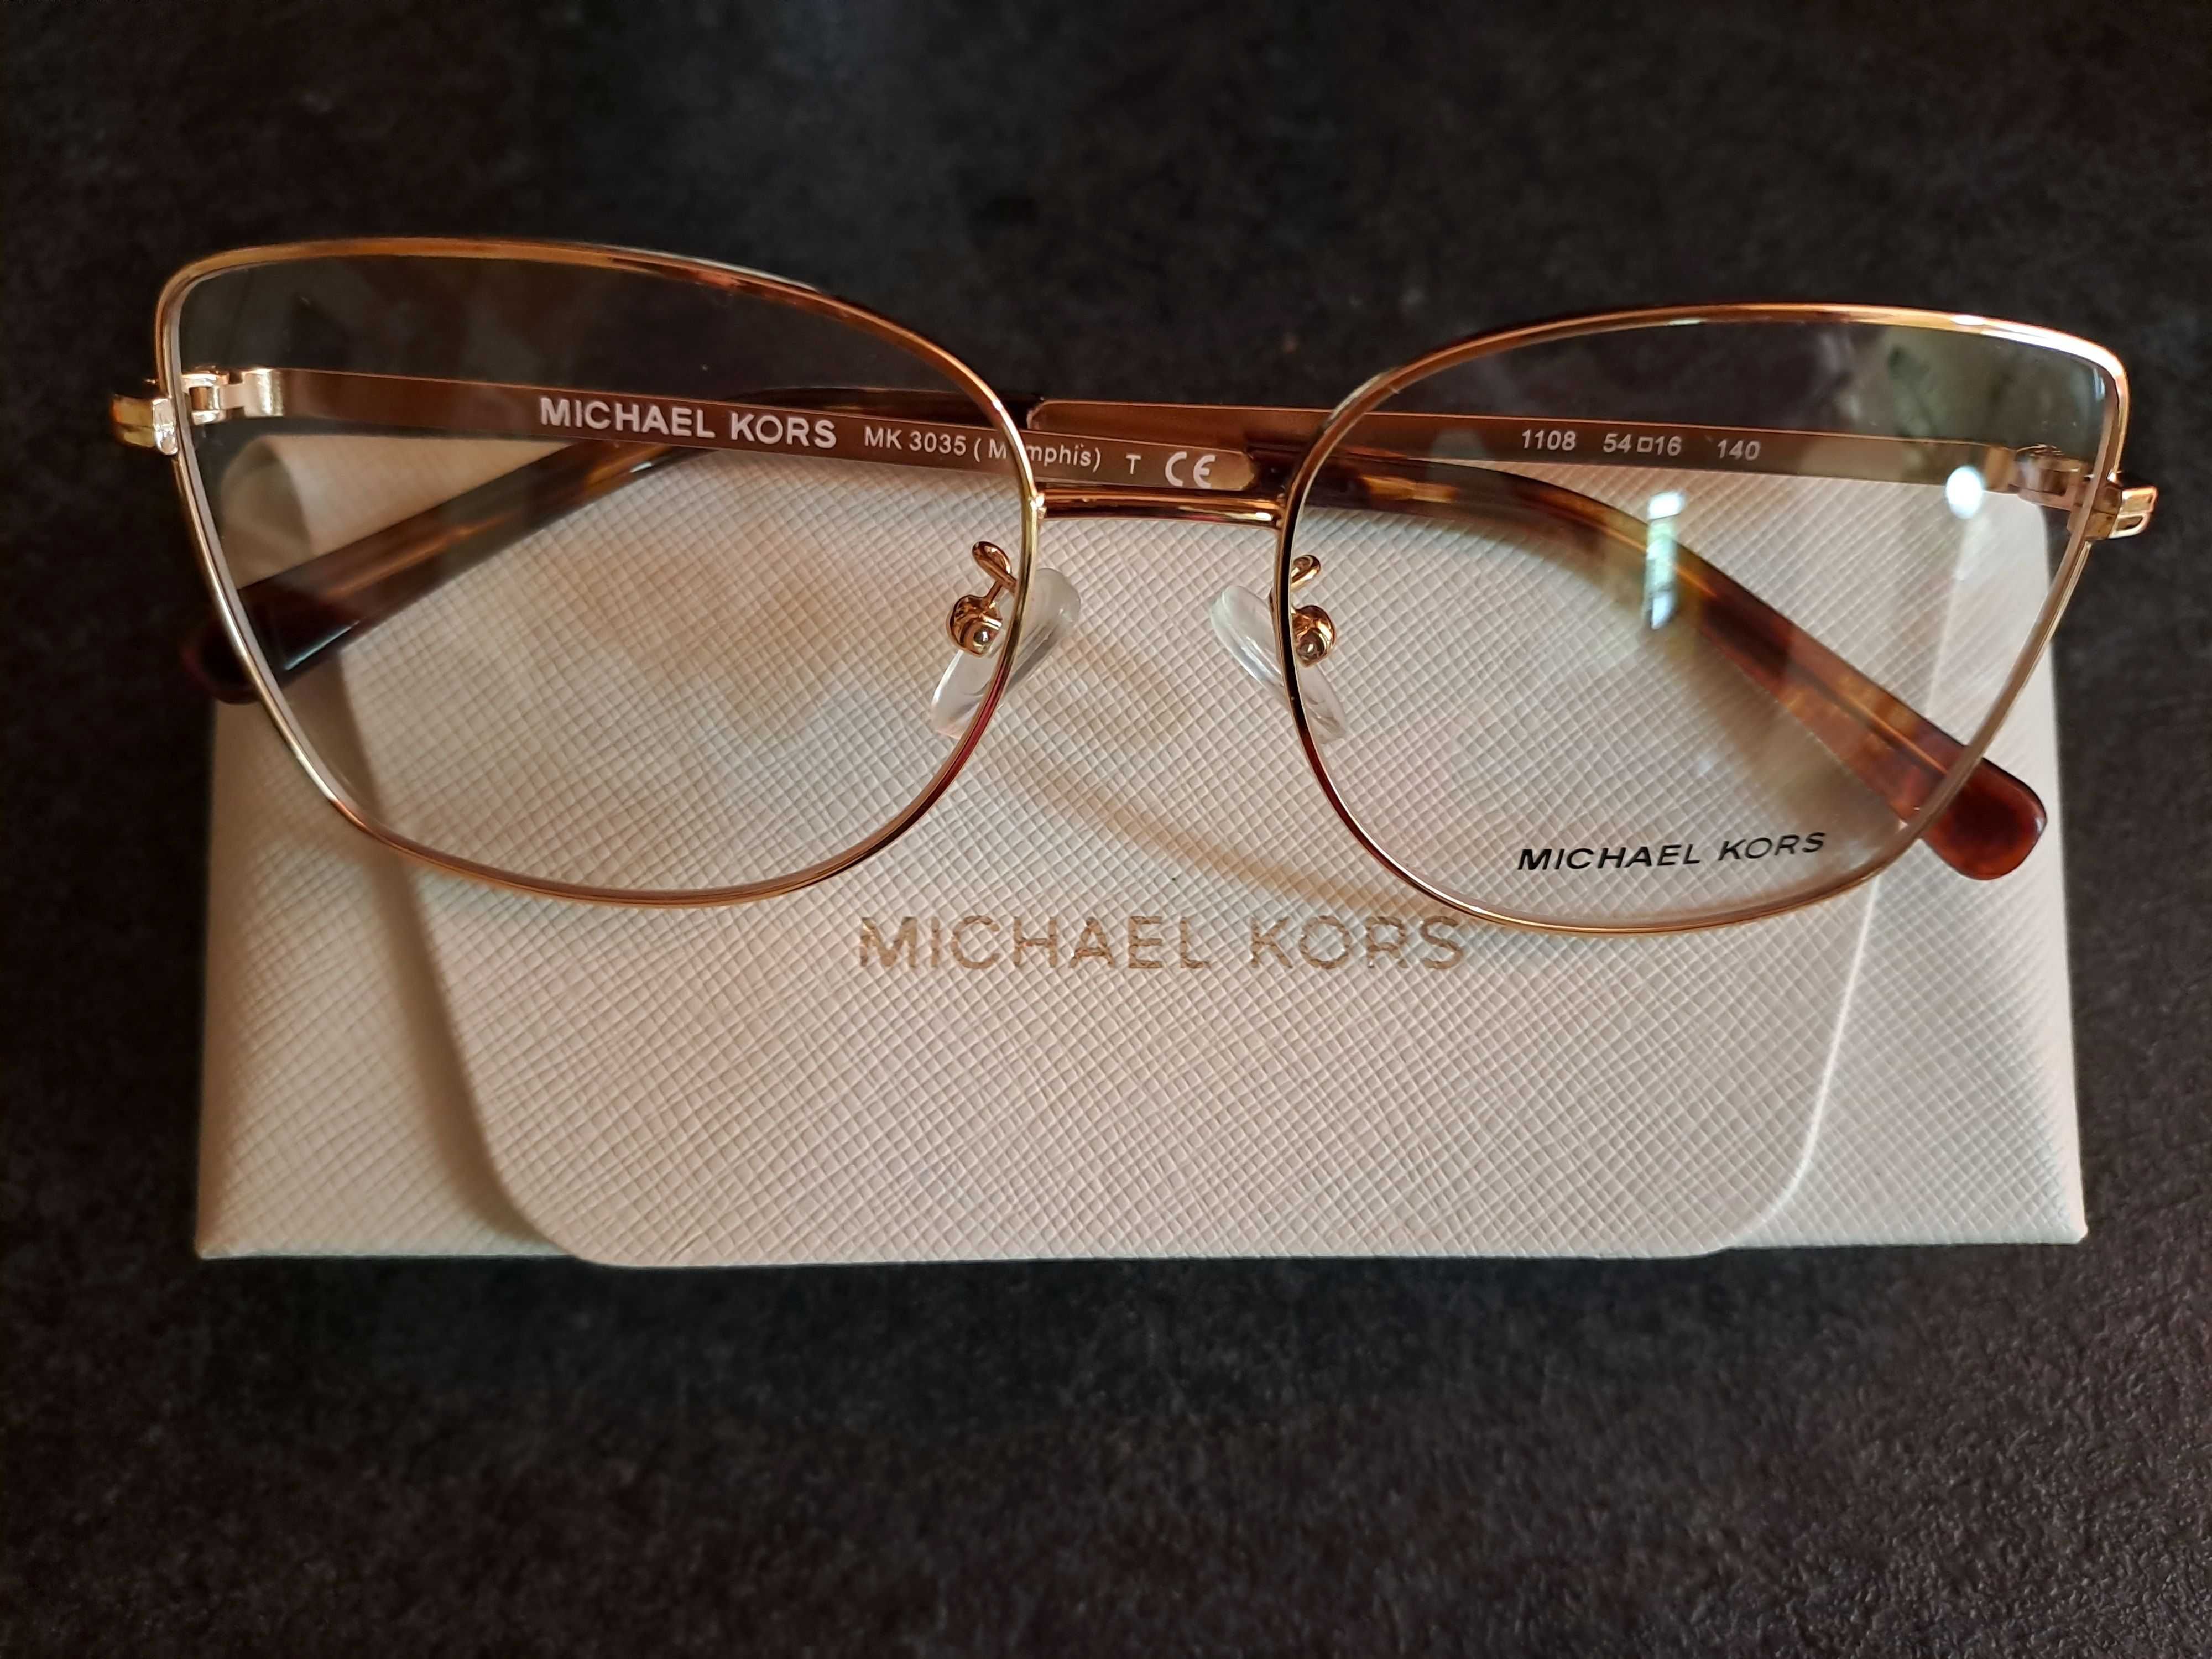 НОВА диоптрична рамка за очила Michael Kors Memphis MK3035 1108